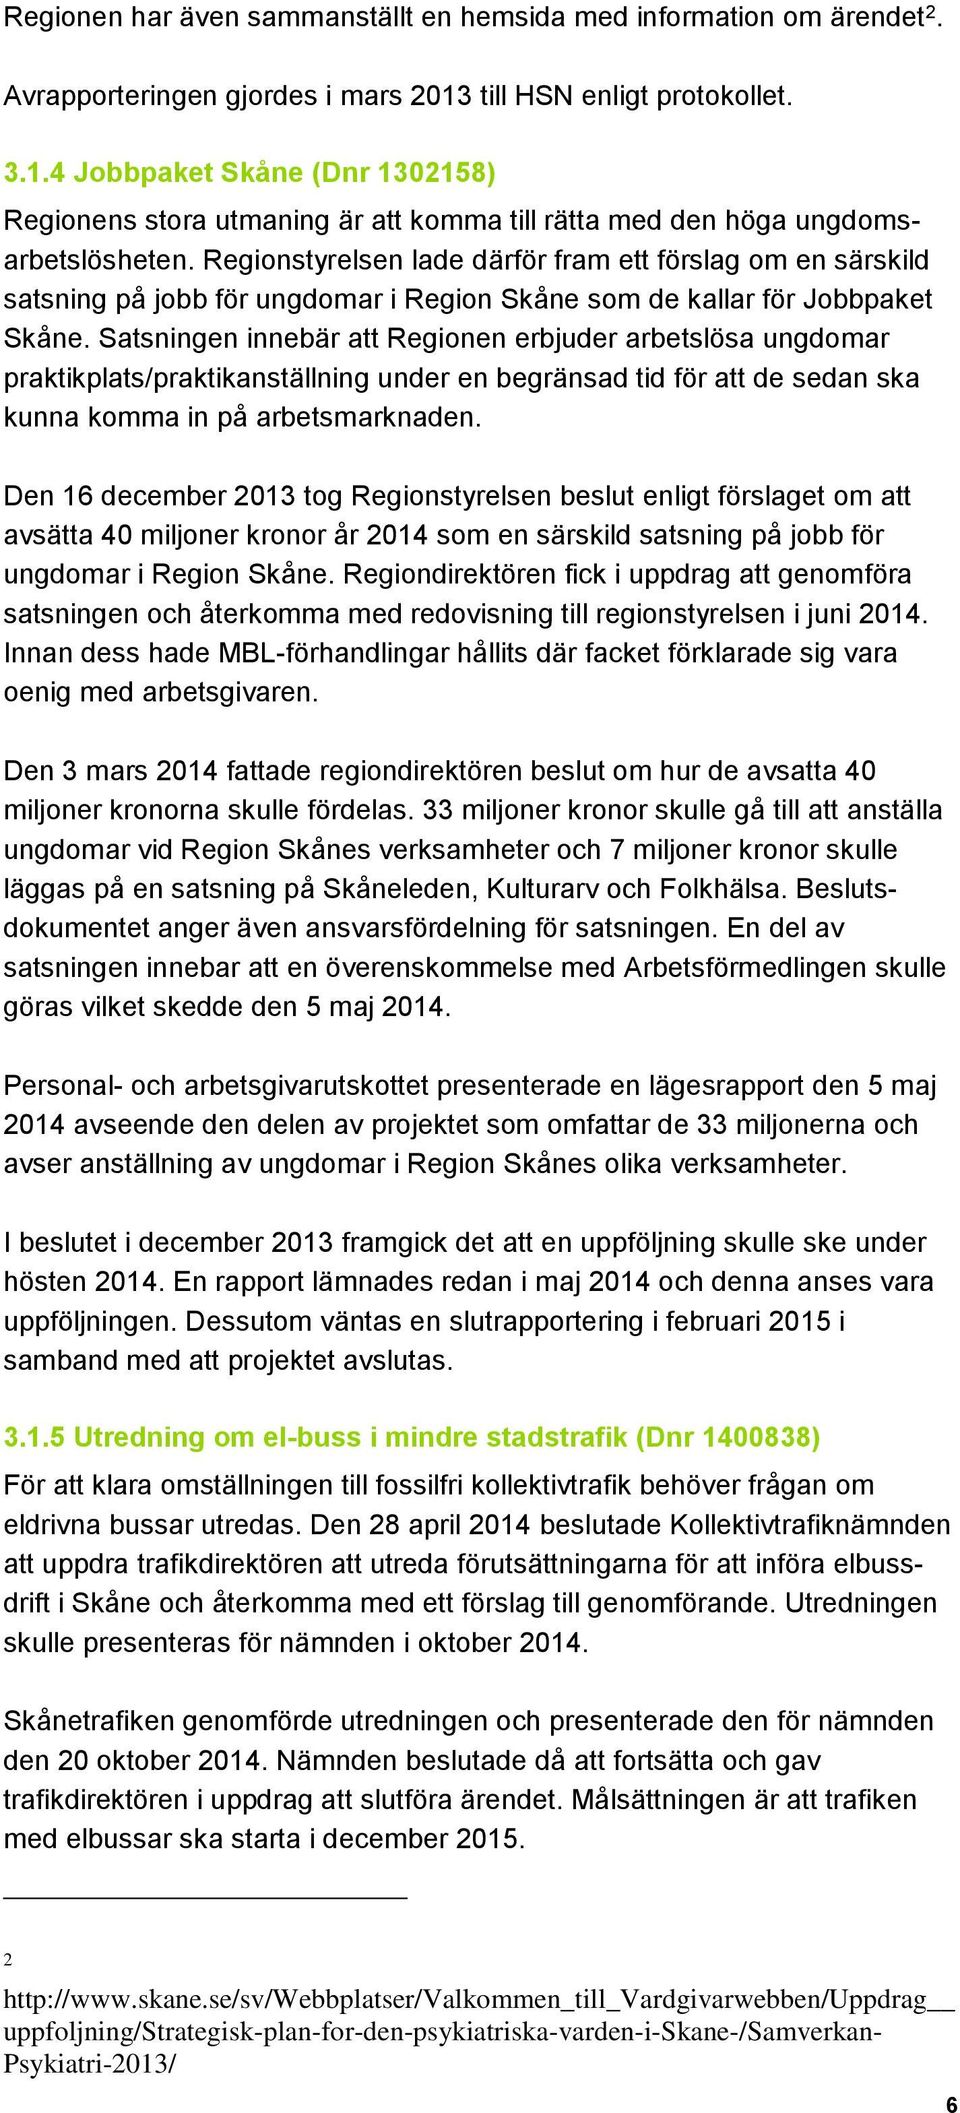 Regionstyrelsen lade därför fram ett förslag om en särskild satsning på jobb för ungdomar i Region Skåne som de kallar för Jobbpaket Skåne.